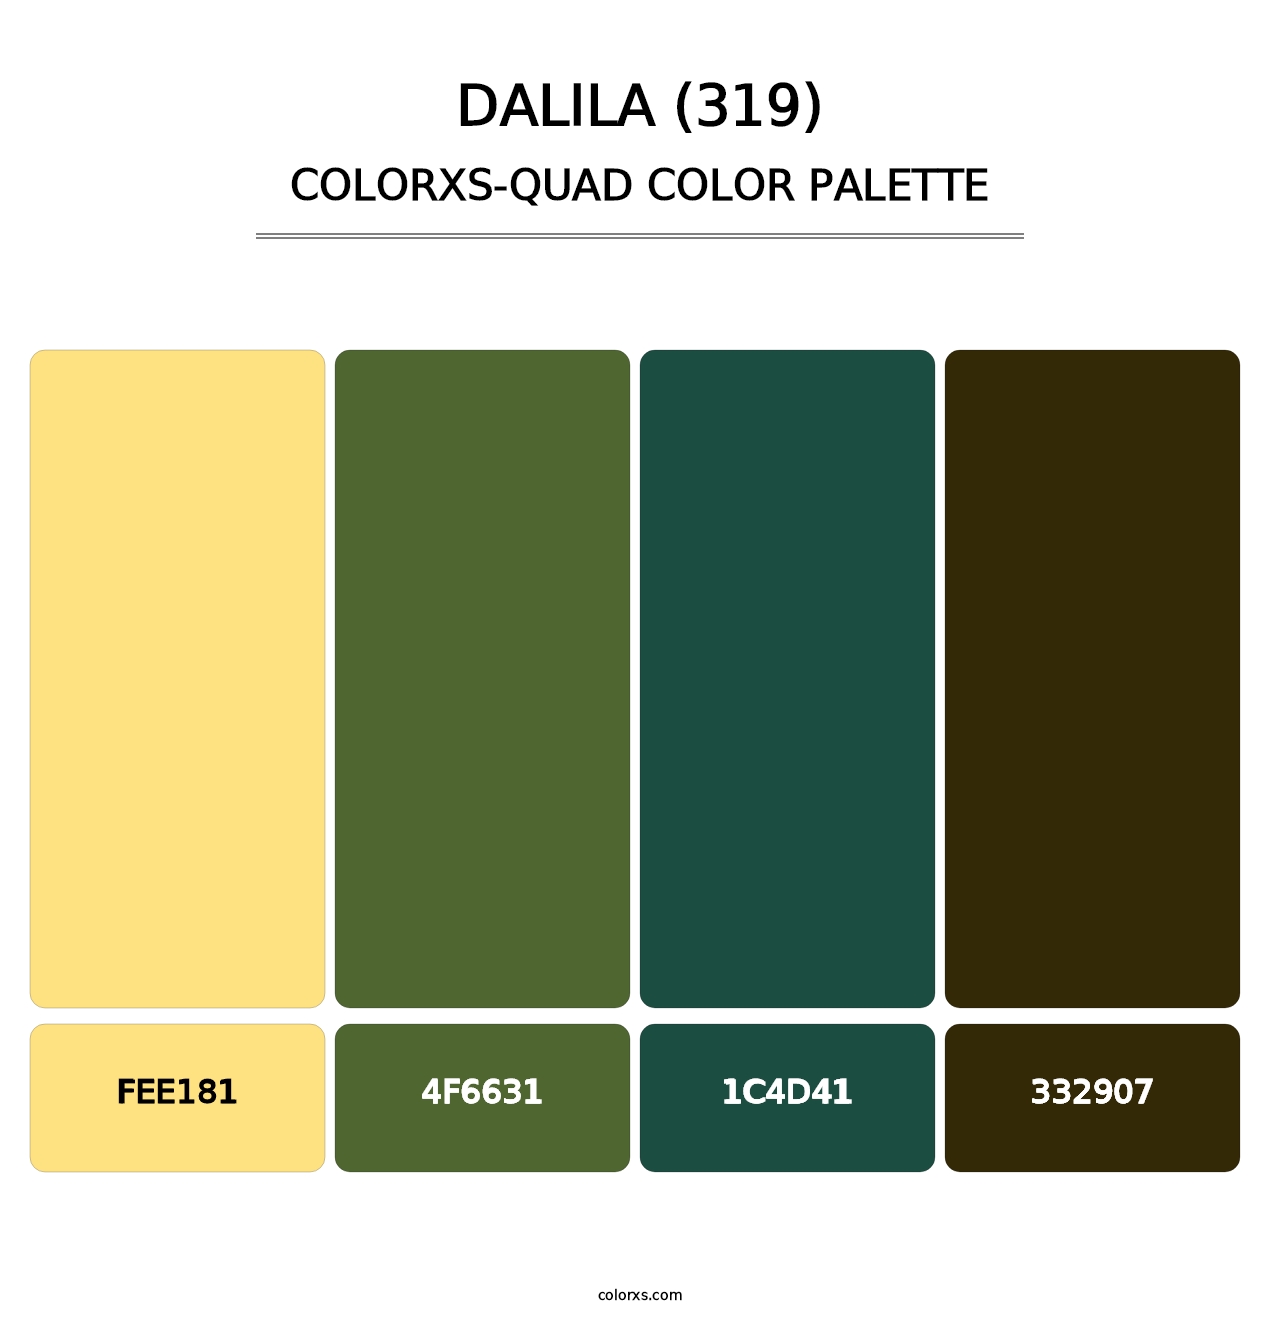 Dalila (319) - Colorxs Quad Palette